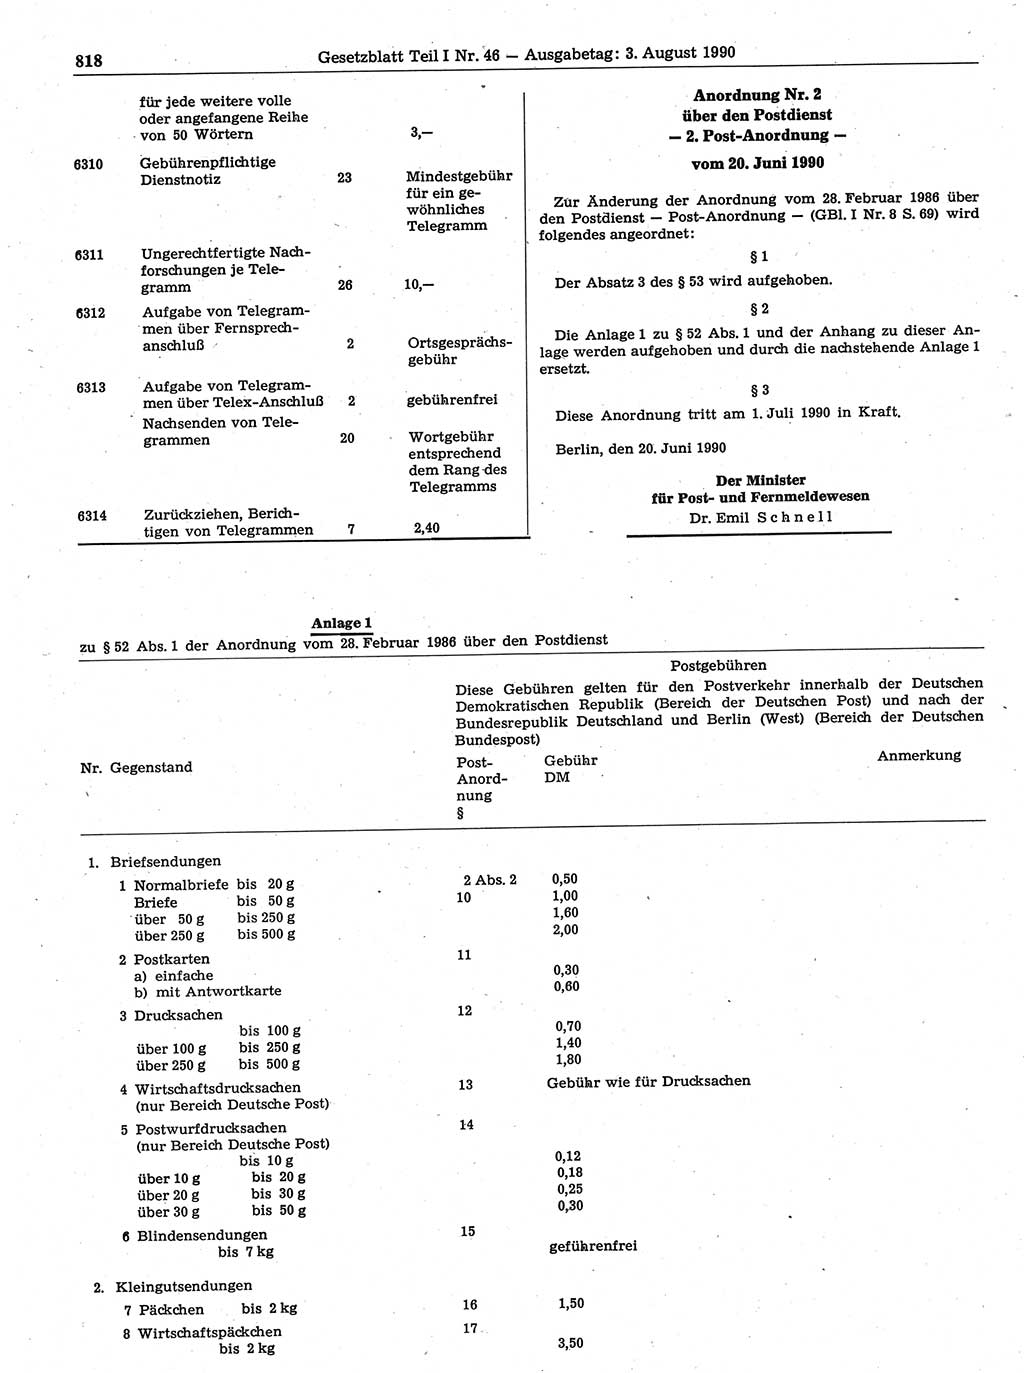 Gesetzblatt (GBl.) der Deutschen Demokratischen Republik (DDR) Teil Ⅰ 1990, Seite 818 (GBl. DDR Ⅰ 1990, S. 818)